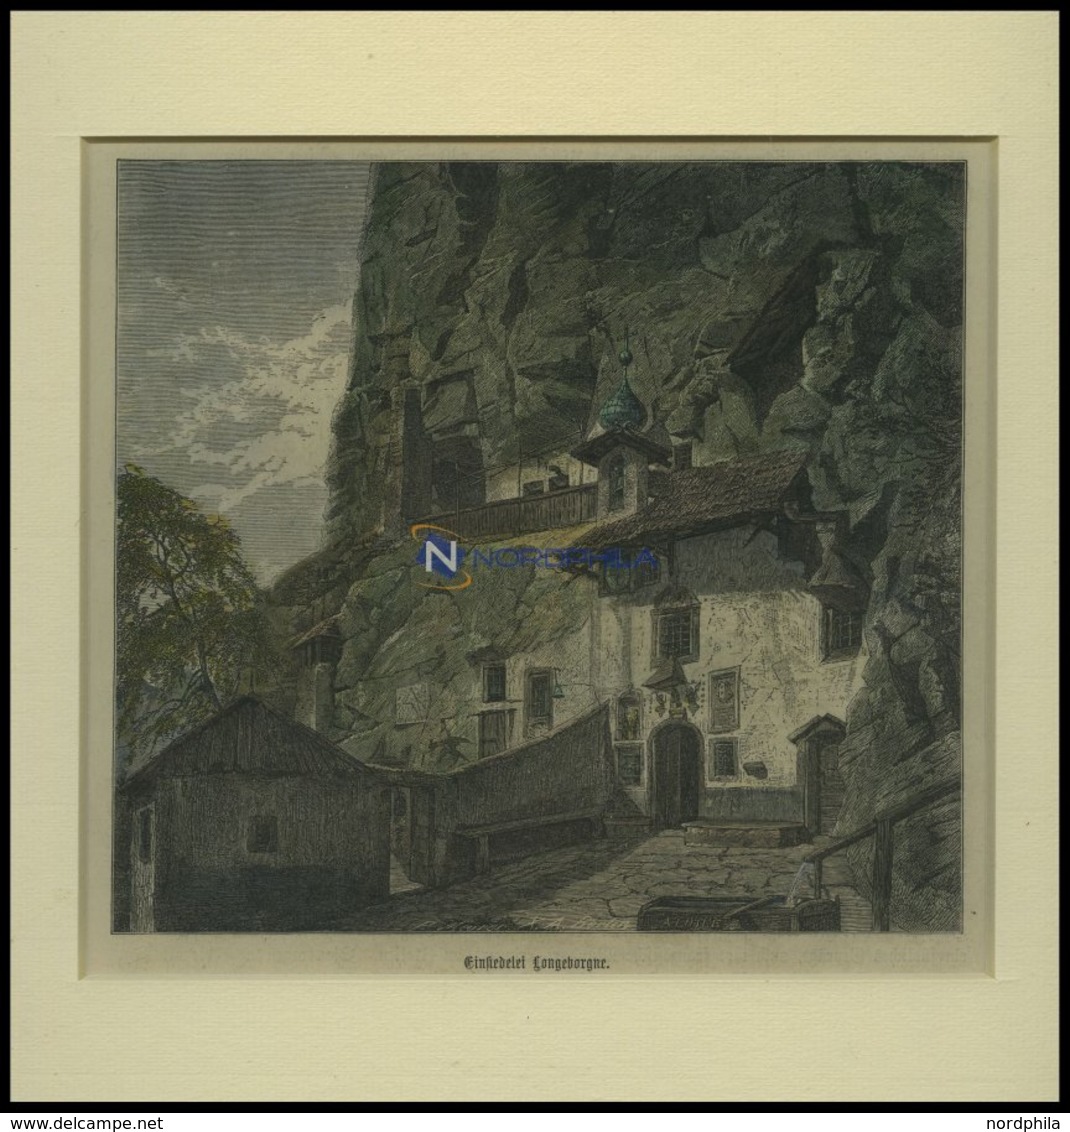 BORGNE: Einsiedelei Longeborgne, Kolorierter Holzstich Um 1880 - Litografia